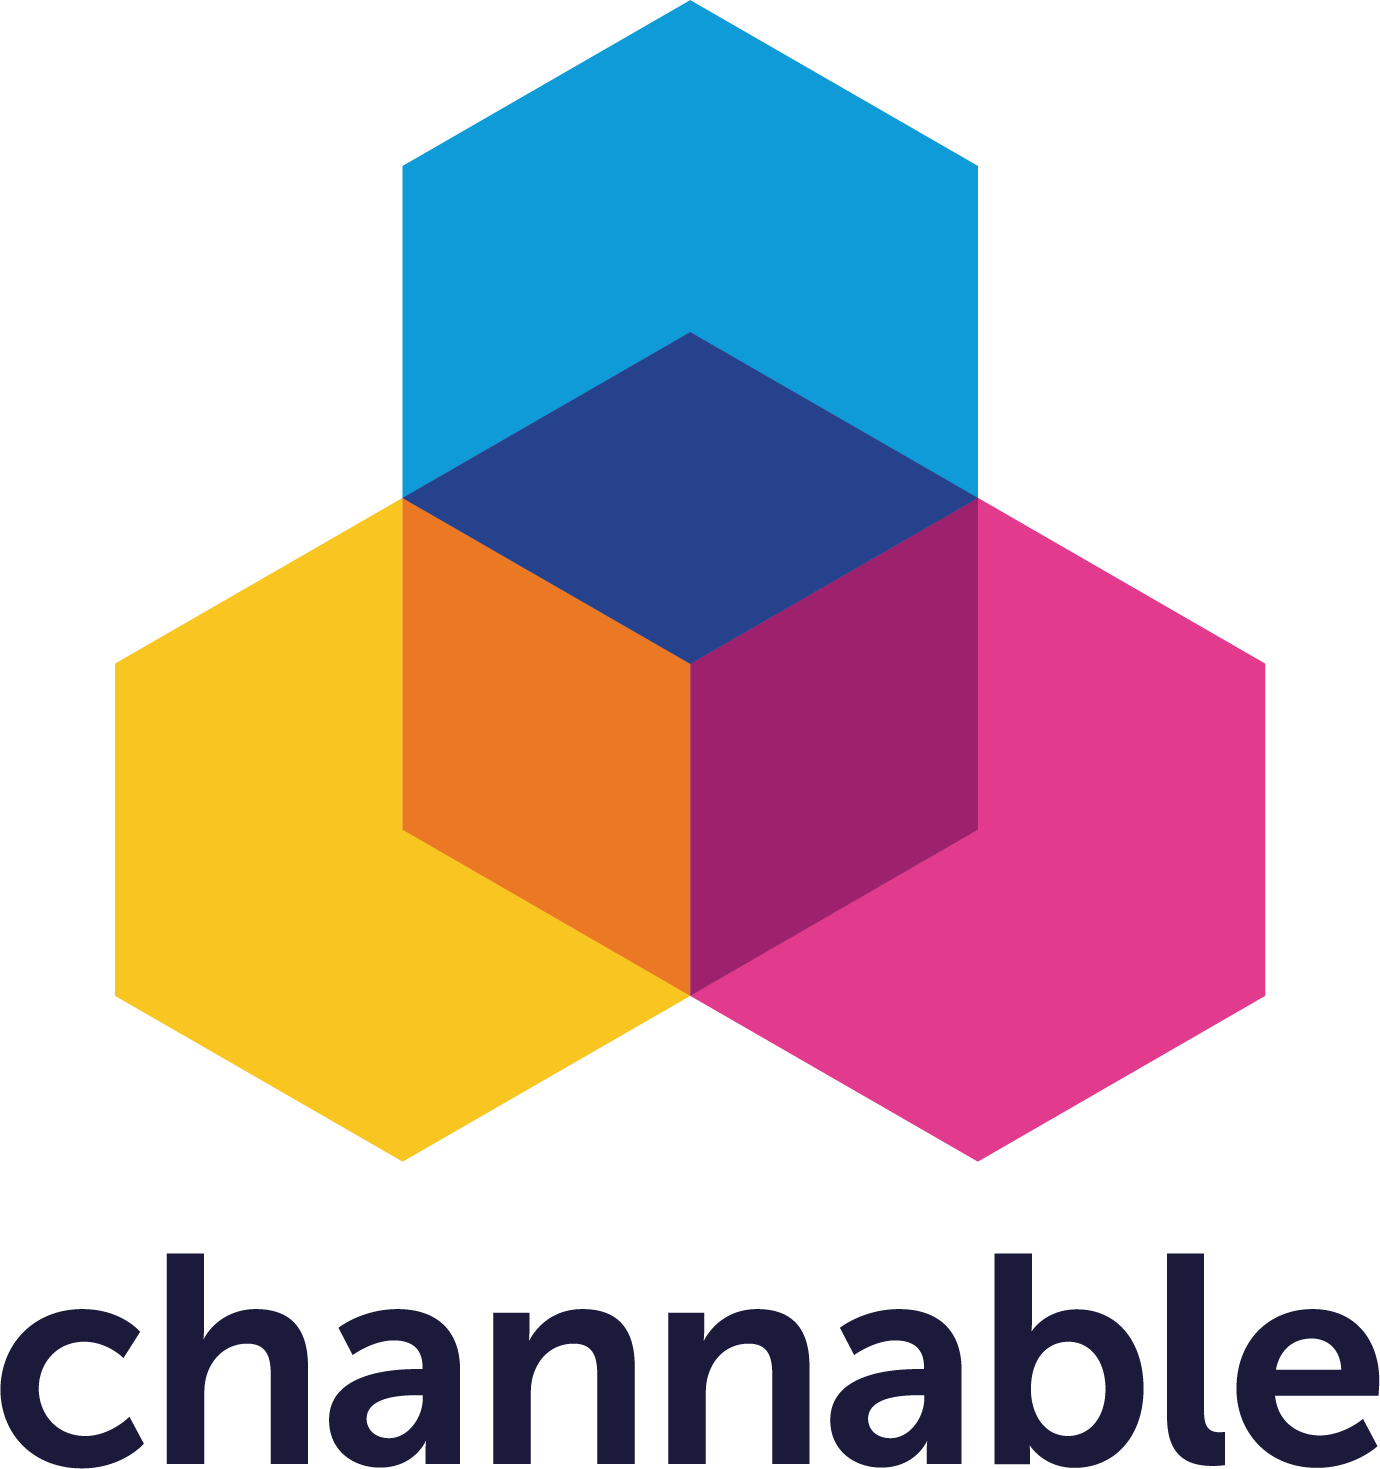 Channable Logo